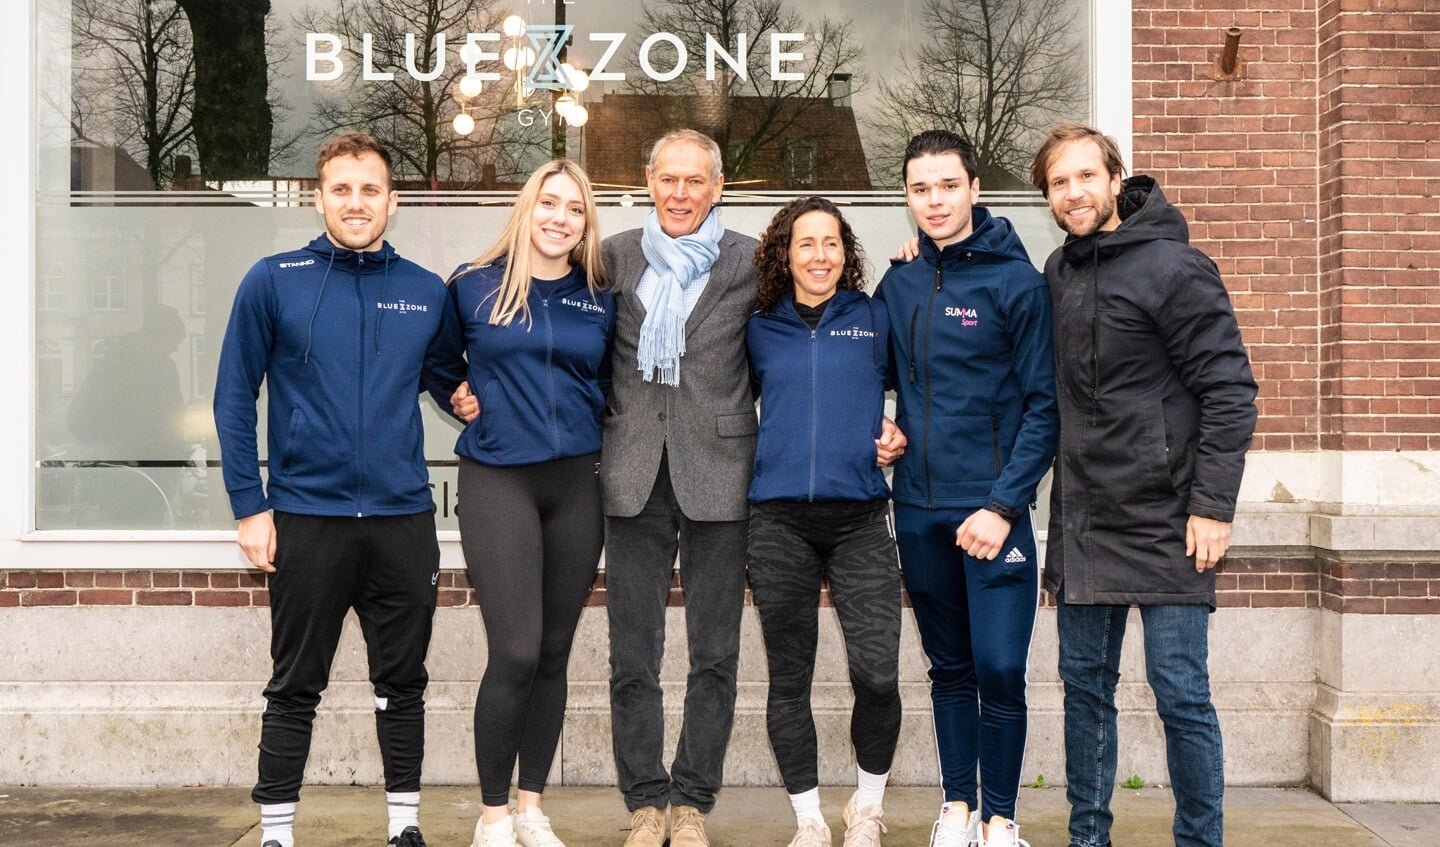 Het team van The Blue Zone Gym met in het midden Ard Schenk.